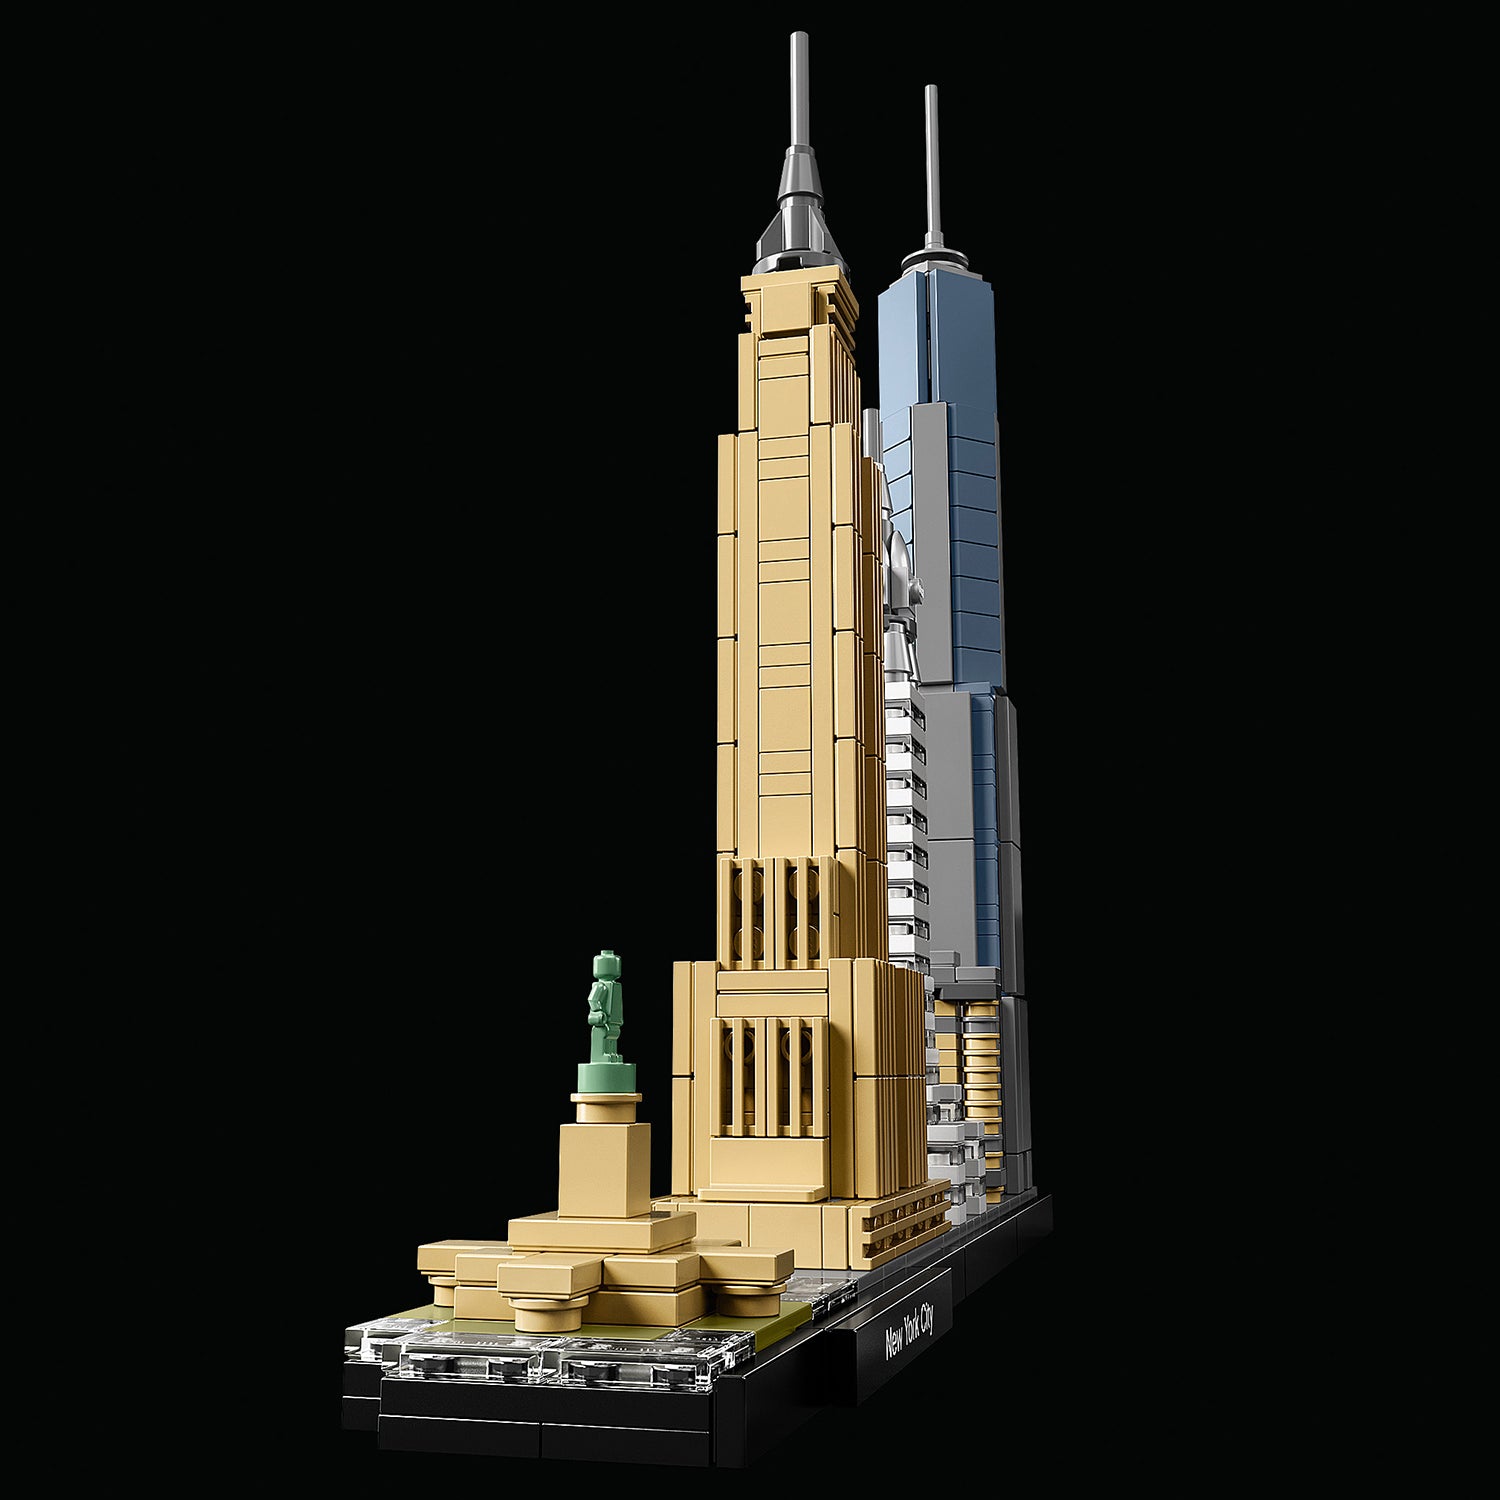 LEGO® Architecture New York City Building Set 21028 Default Title